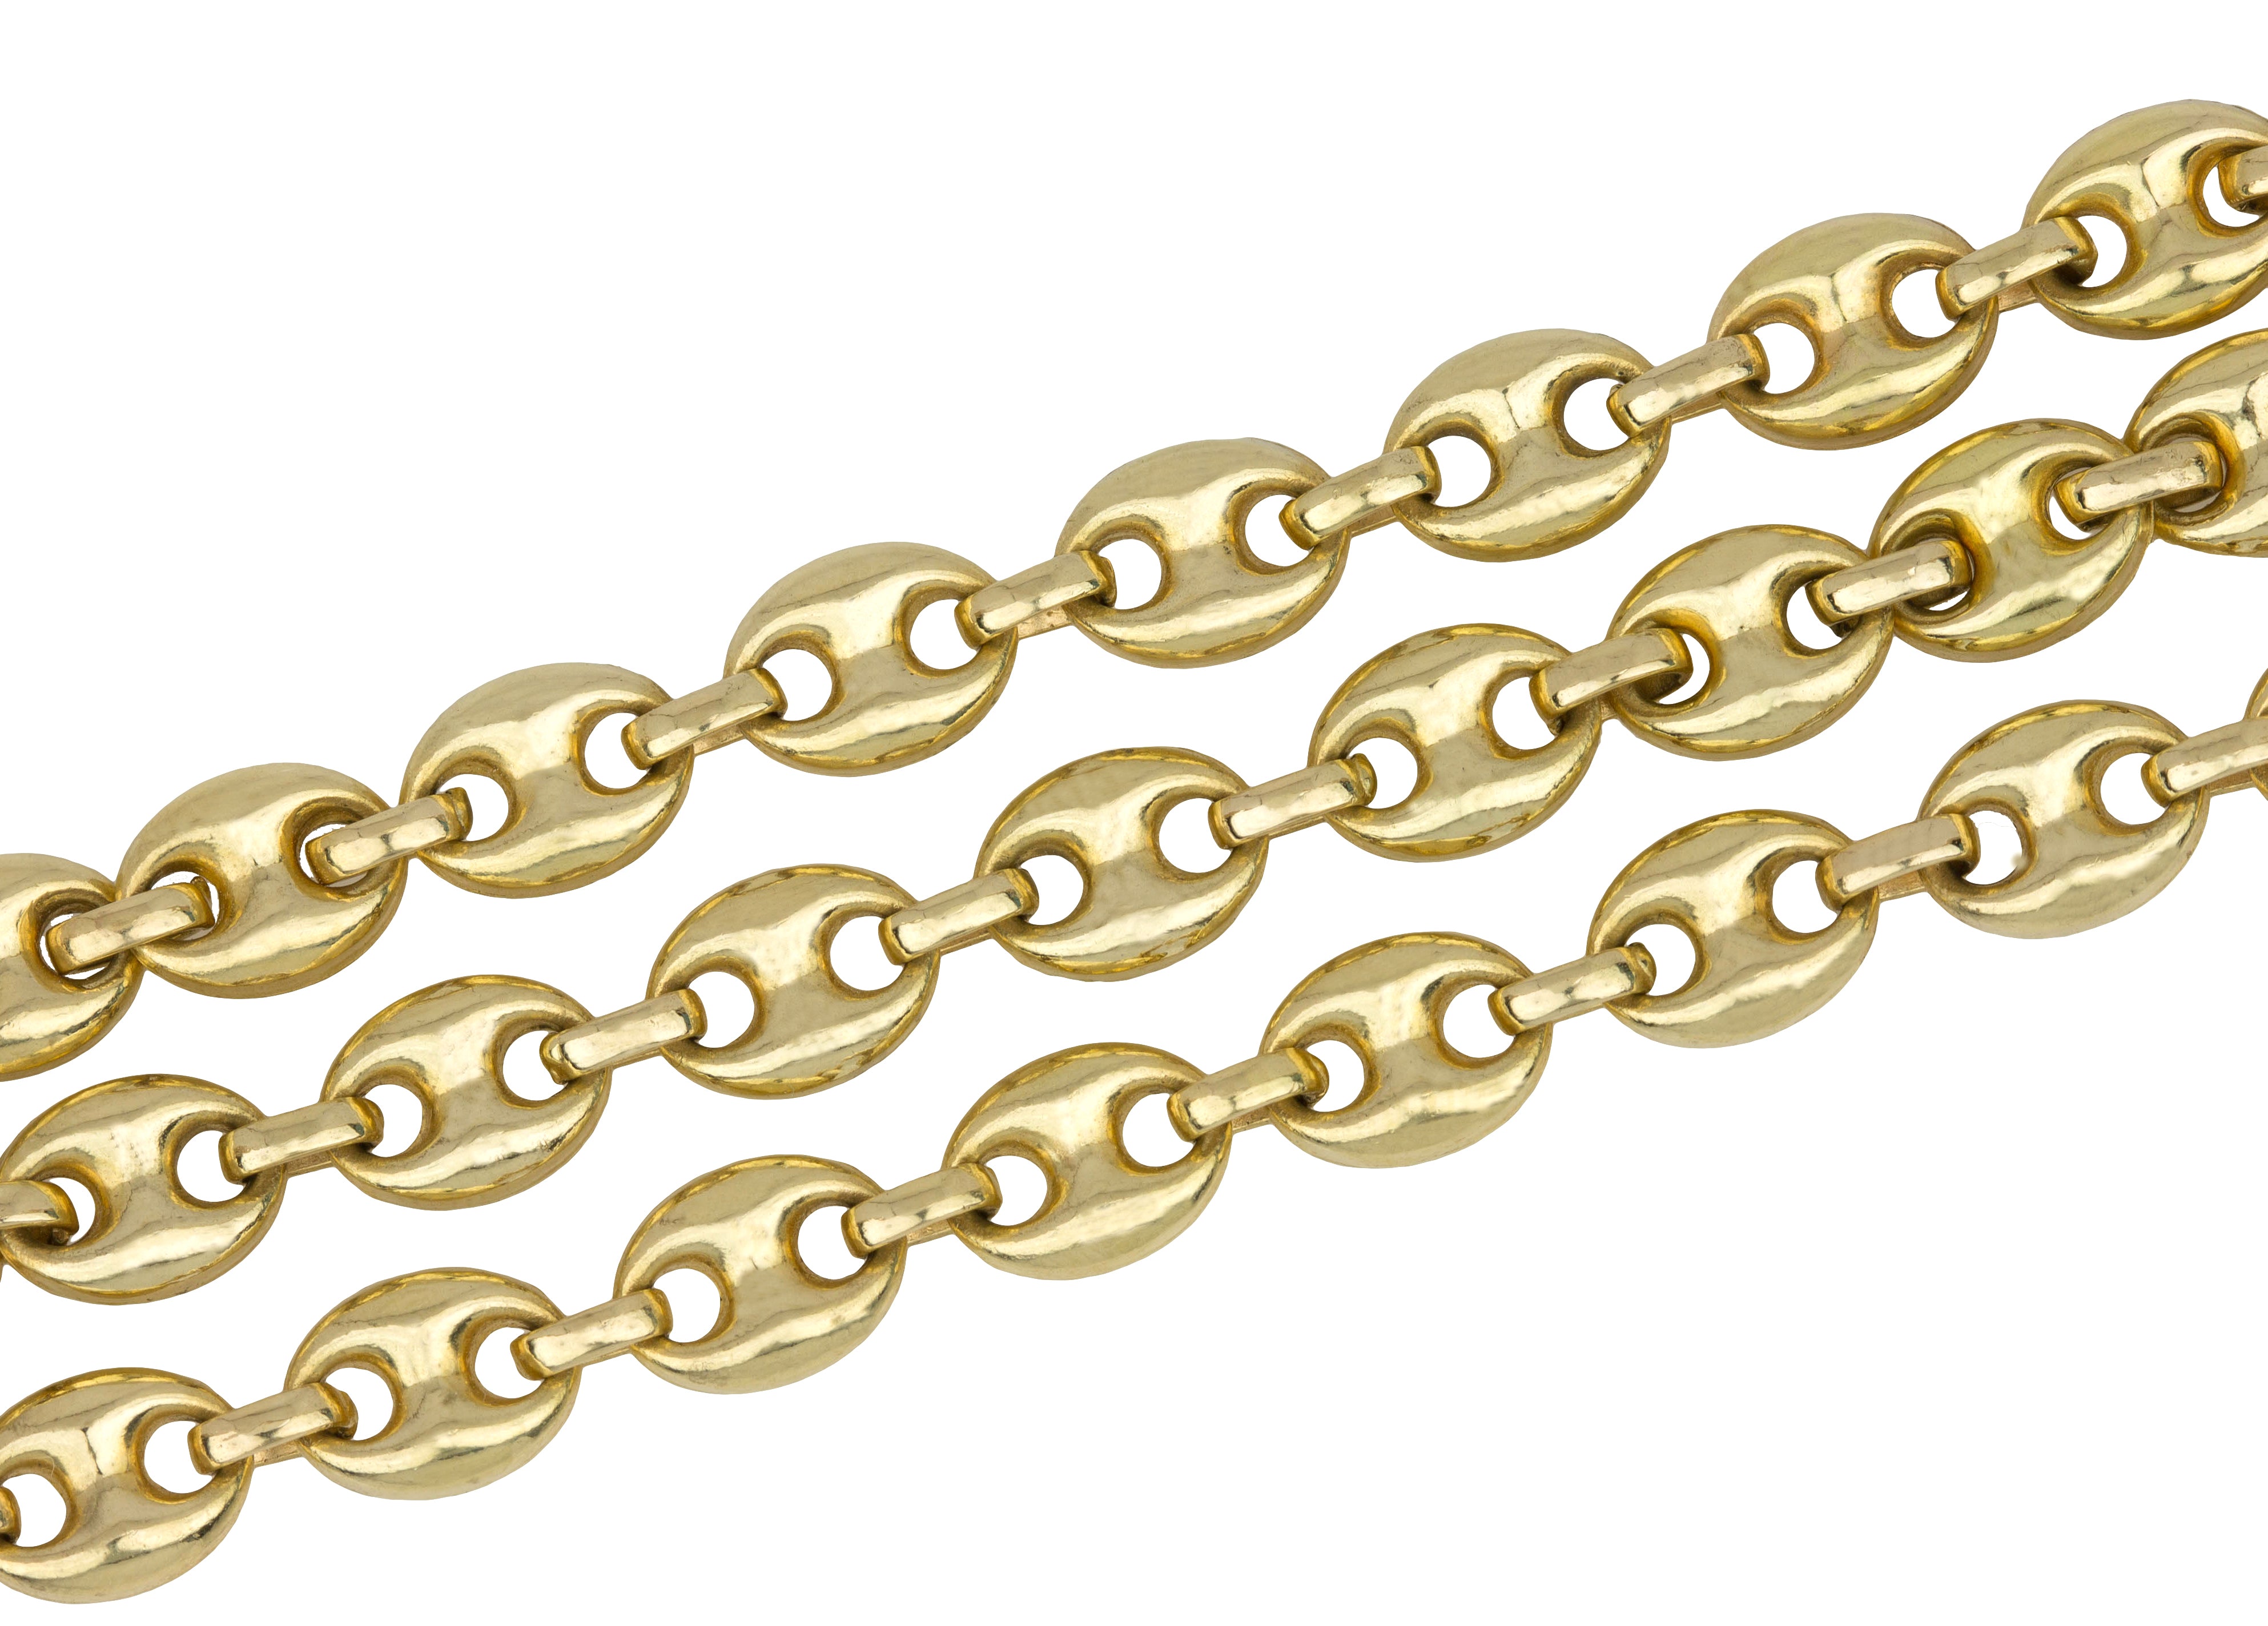 gucci chain